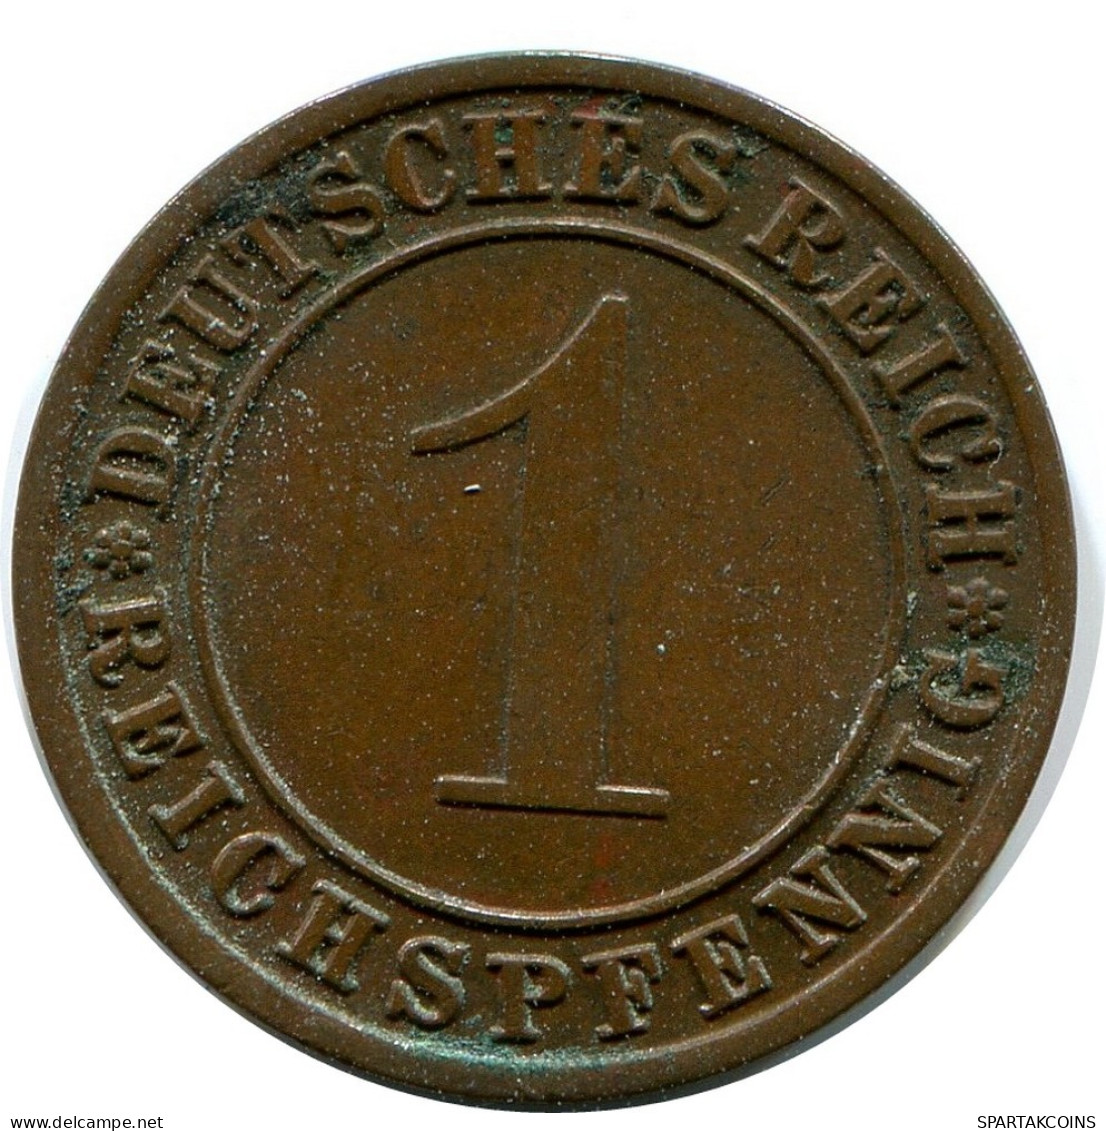 1 REICHSPFENNIG 1931 A DEUTSCHLAND Münze GERMANY #DB789.D.A - 1 Renten- & 1 Reichspfennig